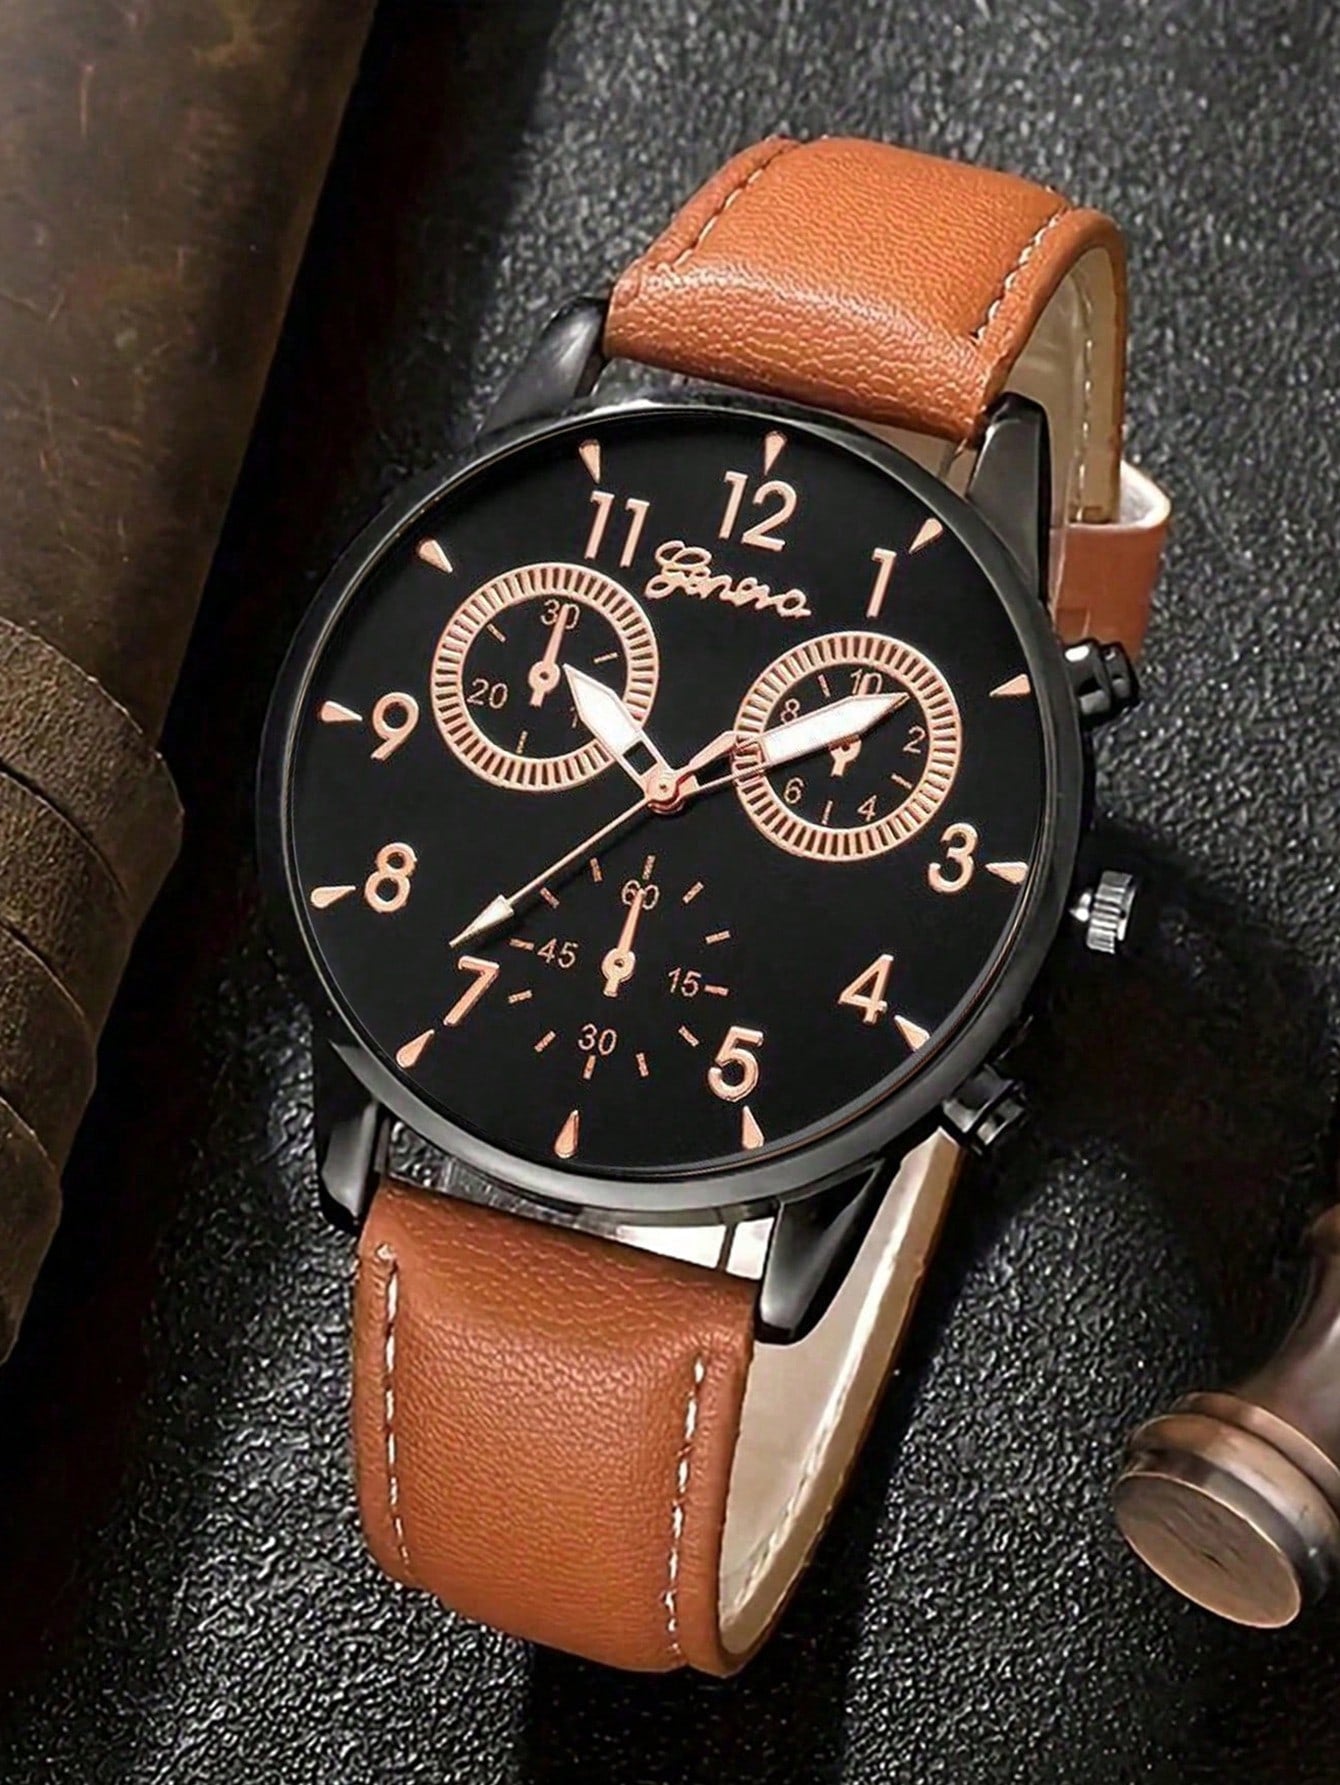 4pcs Set New Men Watch Luxury Bracelet Set Fashion Business Brown Leather Quartz Wrist Watches for Men Gift Set